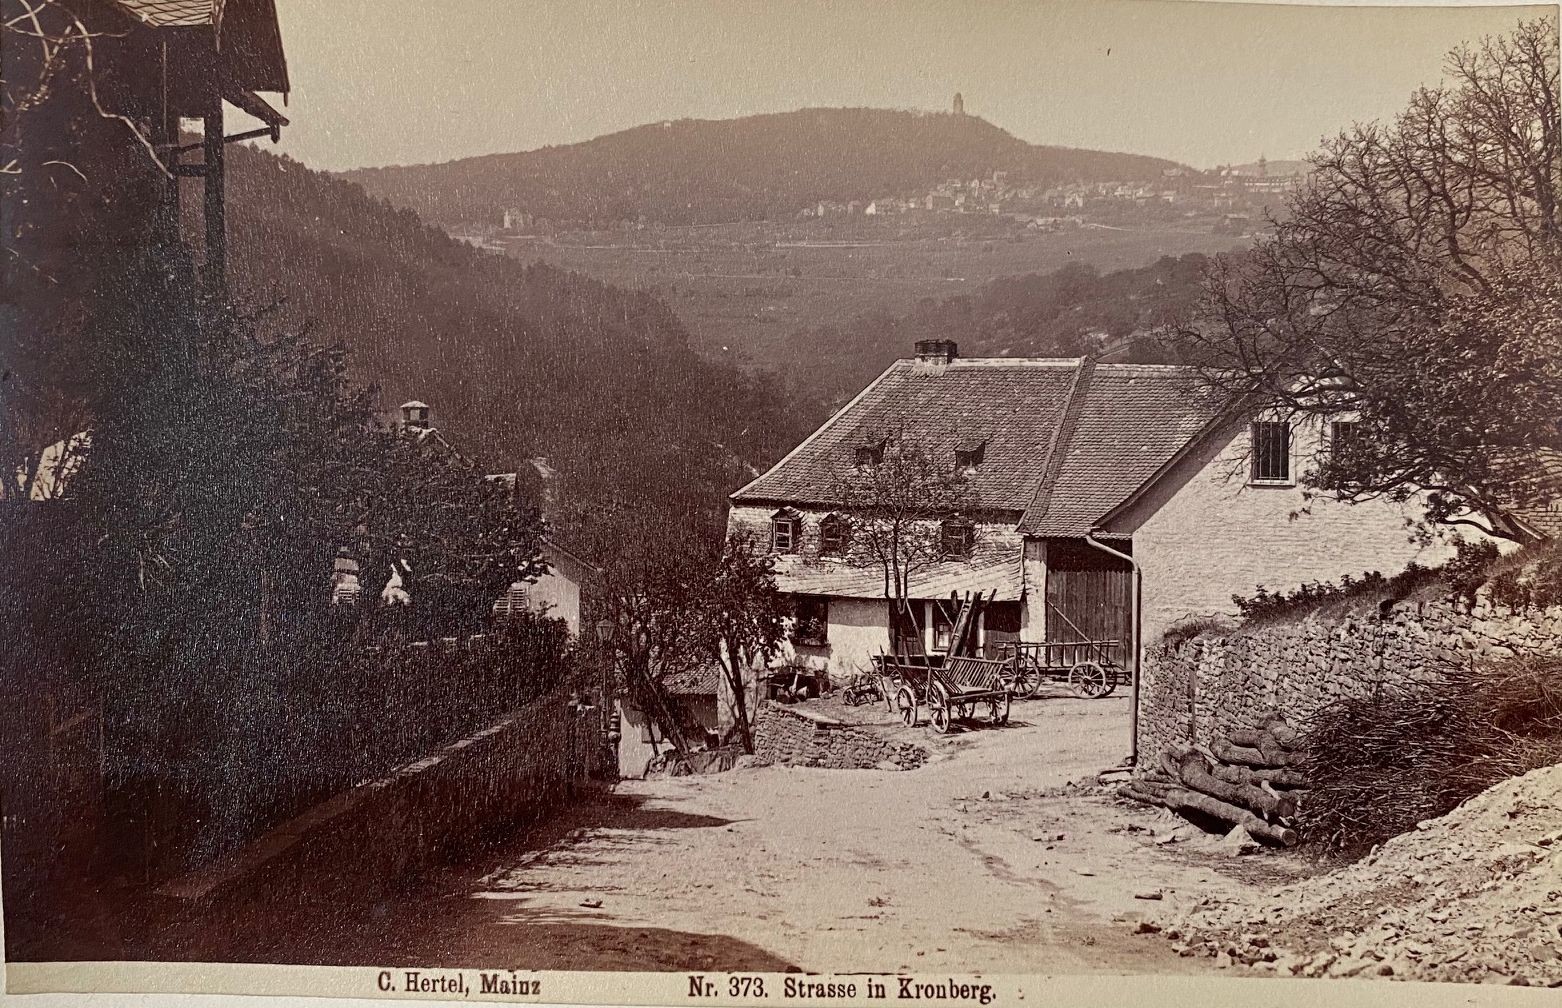 Fotografie, Carl Hertel No. 373, Strasse in Kronberg, ca. 1885 (Taunus-Rhein-Main - Regionalgeschichtliche Sammlung Dr. Stefan Naas CC BY-NC-SA)